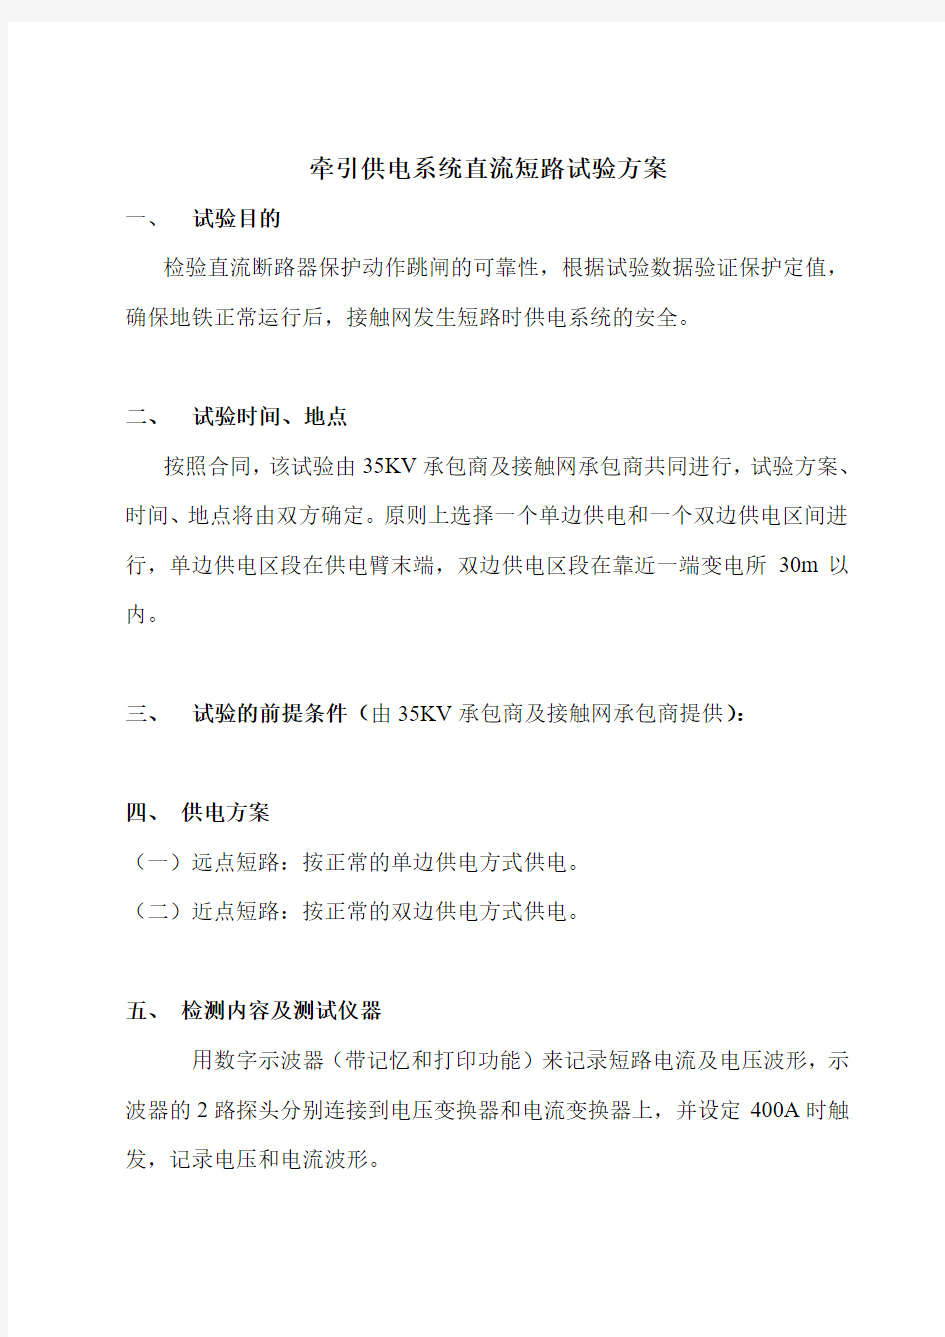 5、深圳地铁供电系统直流短路试验方案